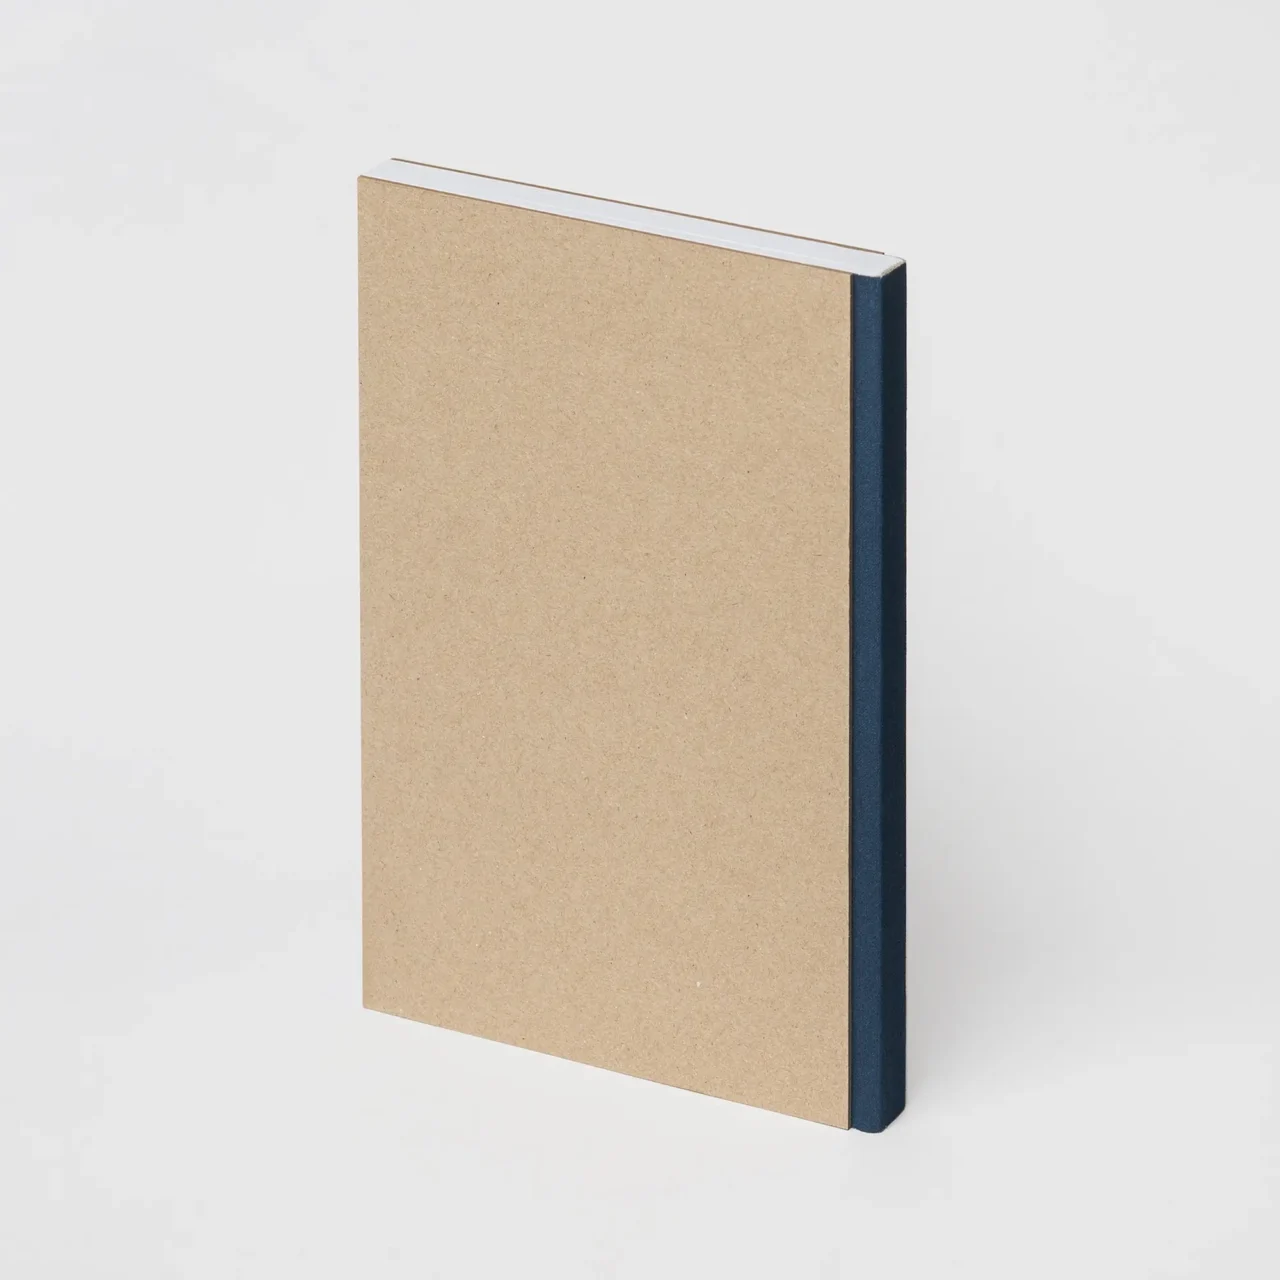 Скетчбук для графики и маркеров, гладкая ярко-белая бумага, А5, твердая обложка, 190 г/м², 60 л